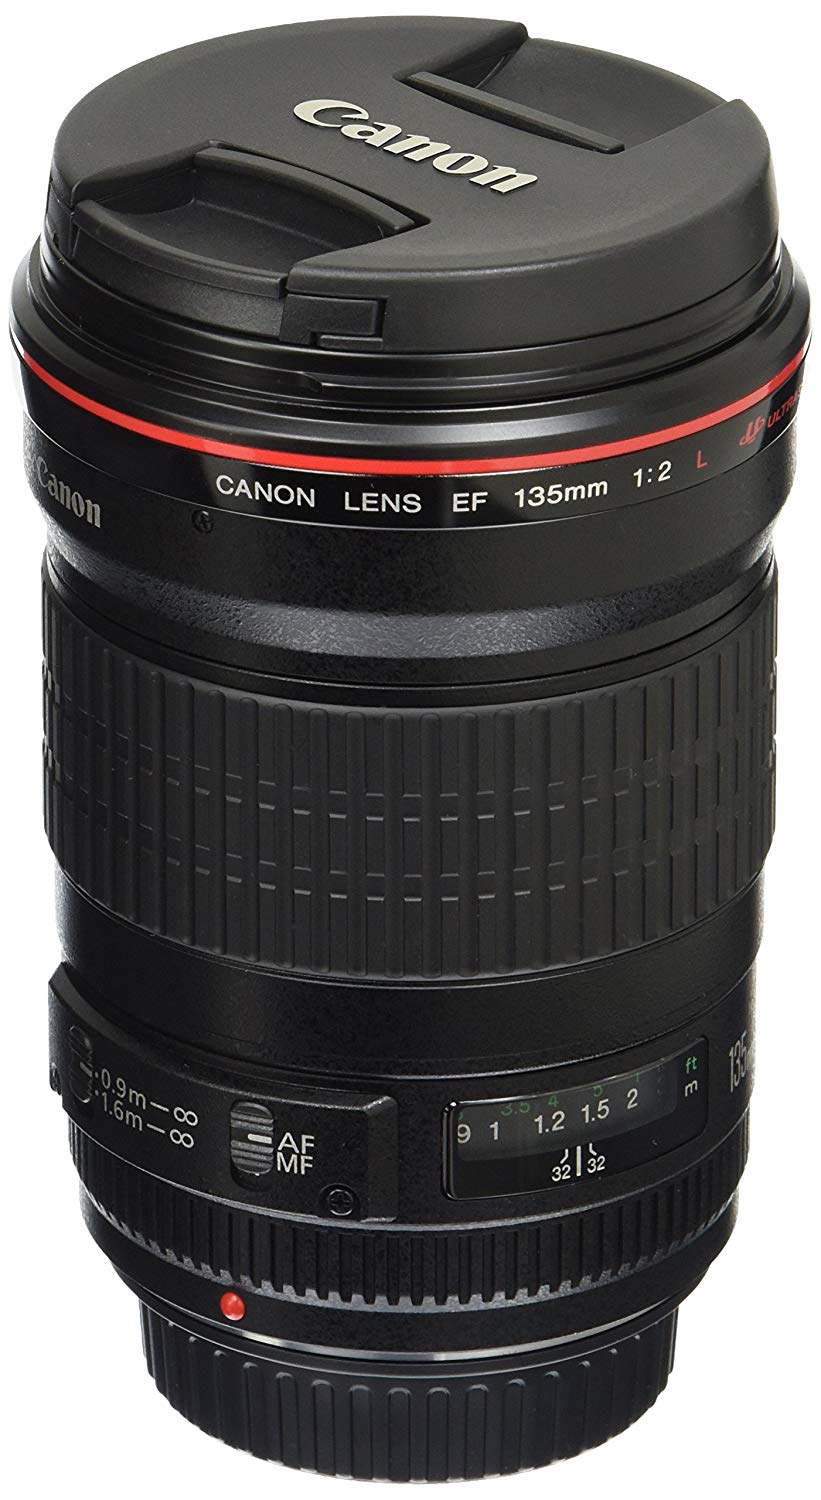 Canon 一眼レフカメラ用EF135mm f / 2LUSMレンズ-修正済み